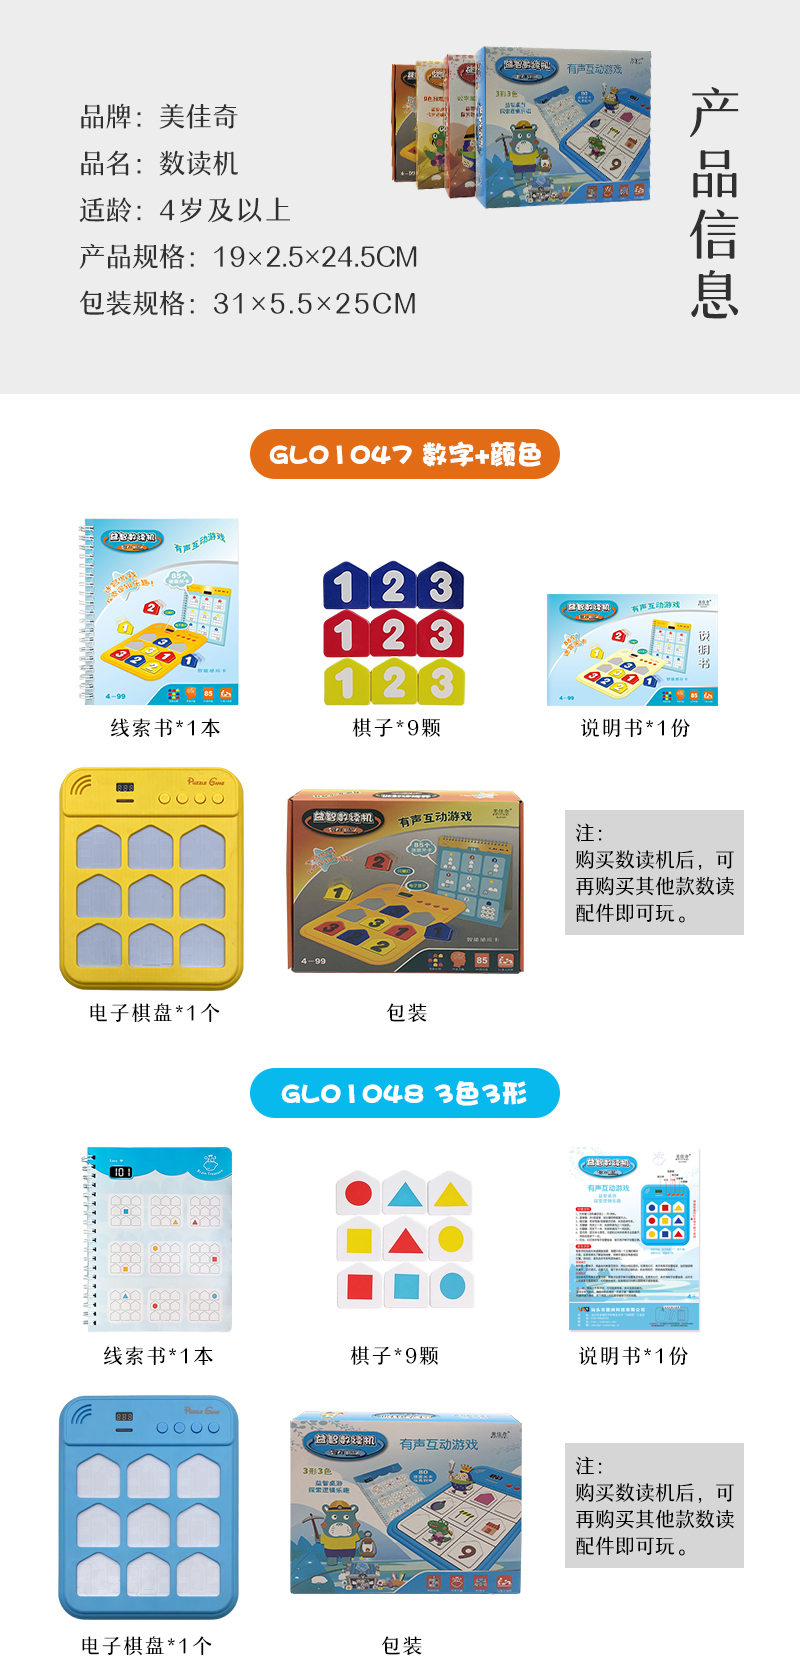 \"美佳奇儿童进阶式数独有声电子玩具,产品编号GL01047-01050\"/